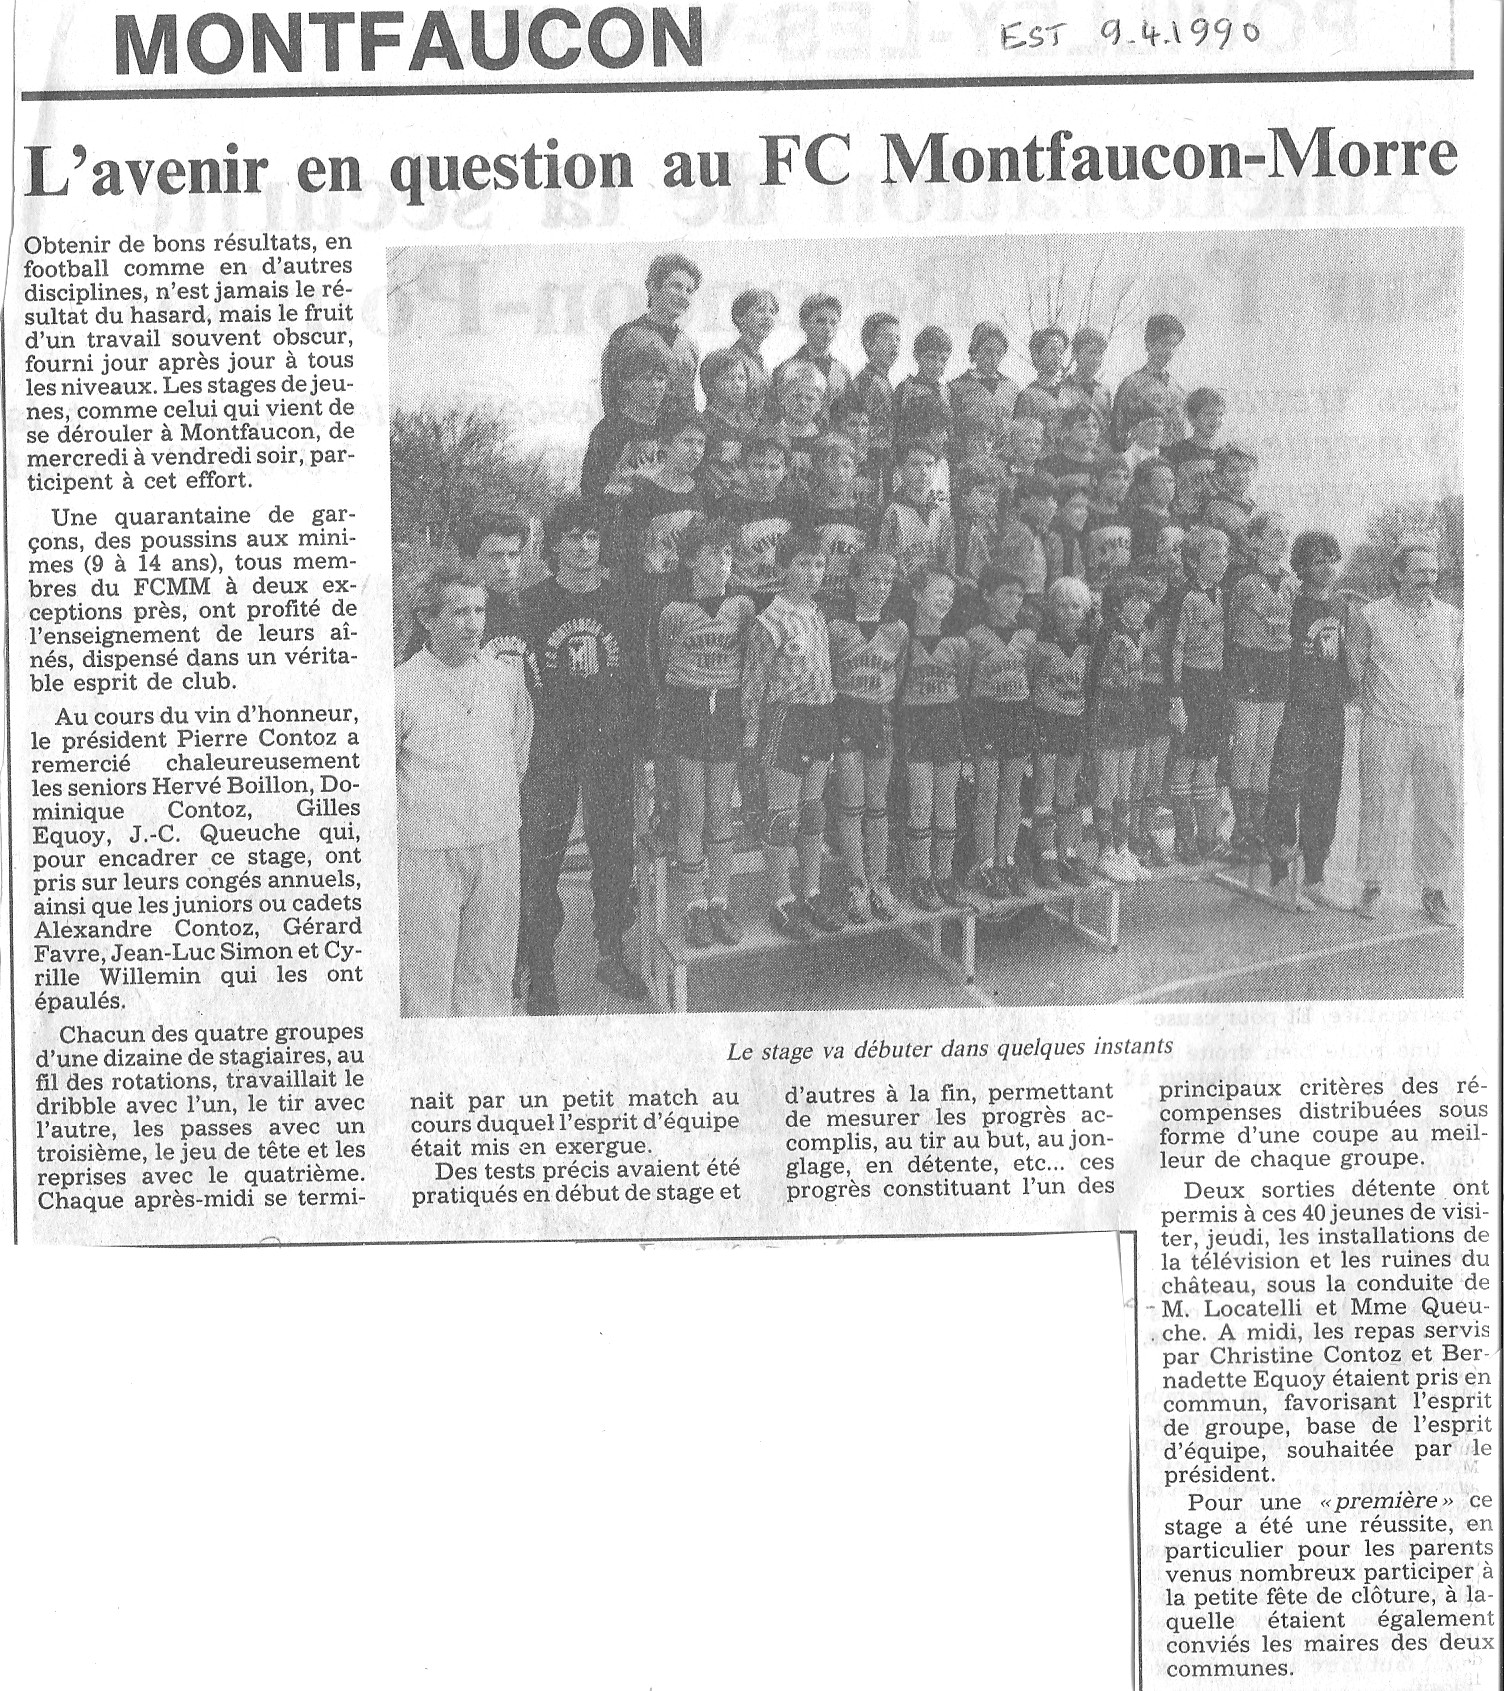 09/04/1990 - L'avenir en question au FC Montfaucon - Morre